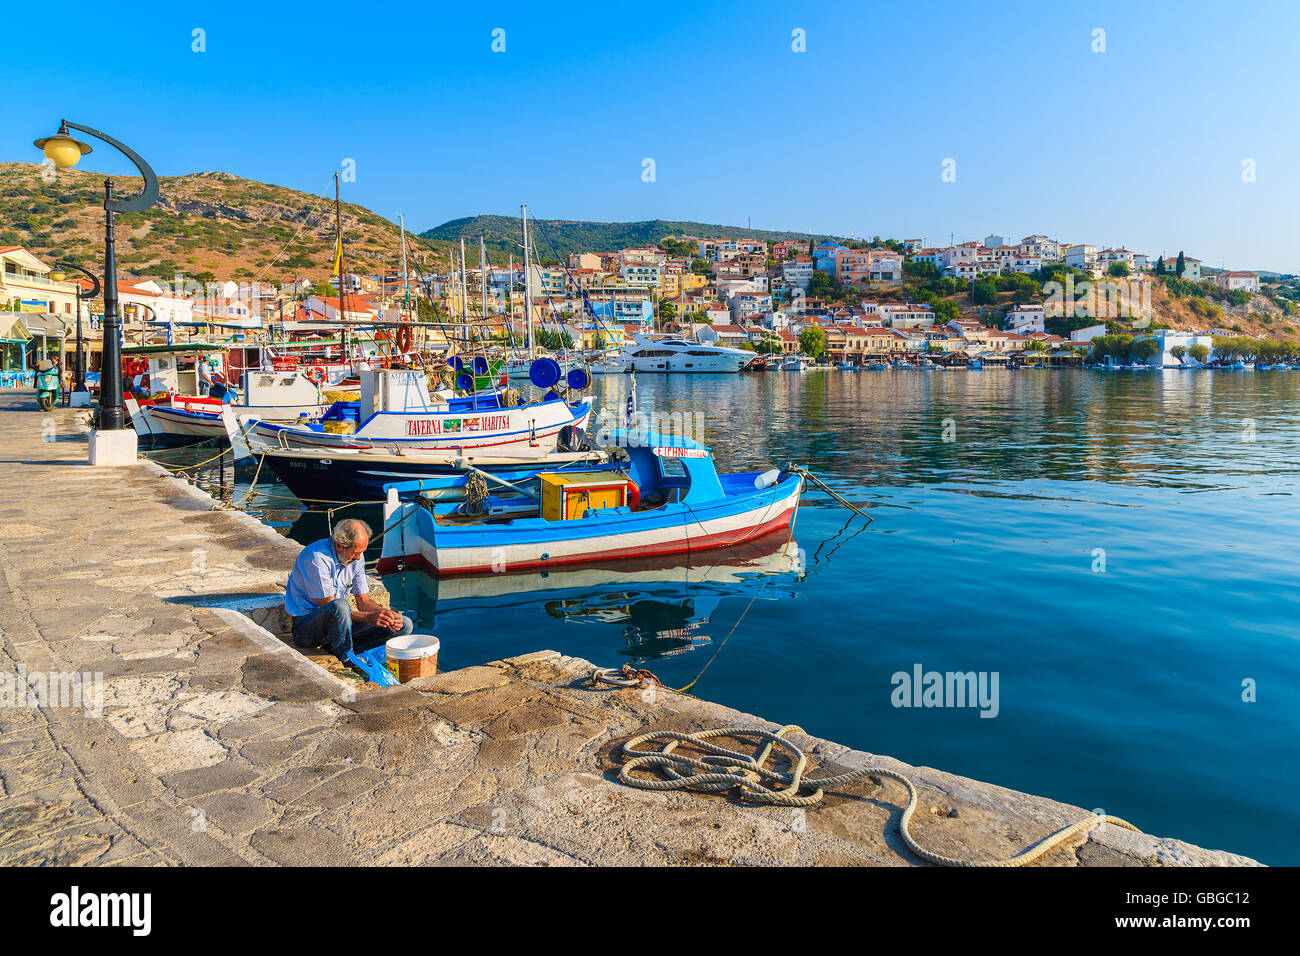 PYTHAGORION PORTA, isola di Samos - Sep 19, 2015: pescatore è preparare il pesce appena pescato nel bellissimo porto di Pythagorion a Samos Foto Stock